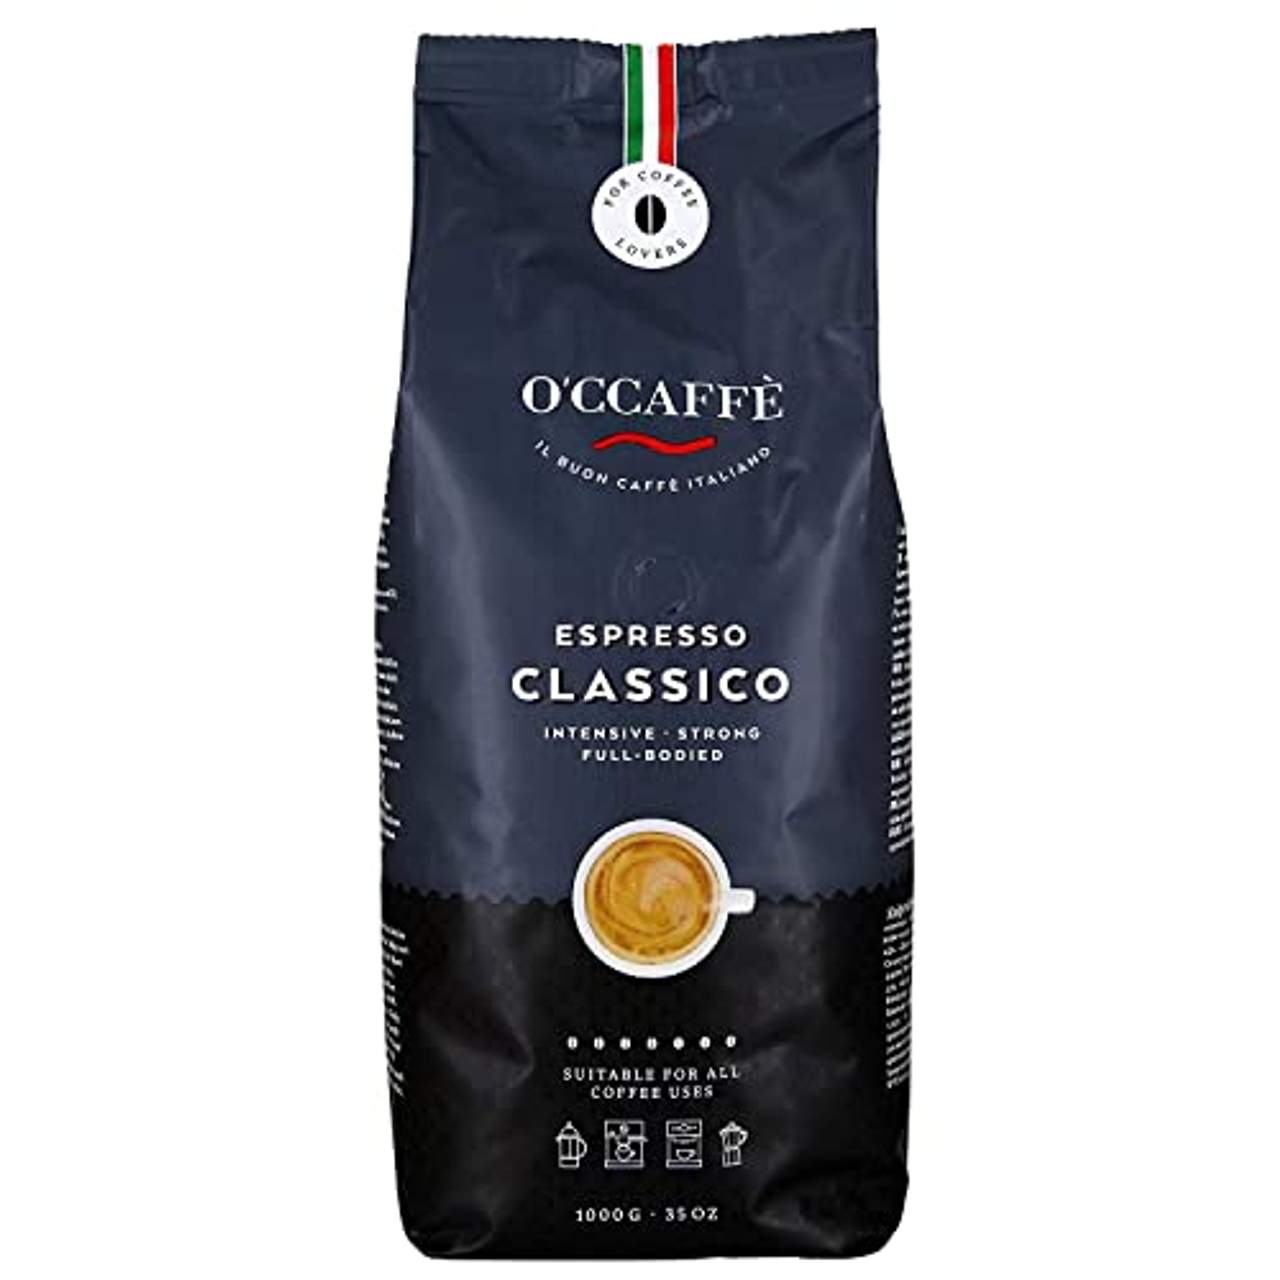 O’ccaffè Espresso Bar starker